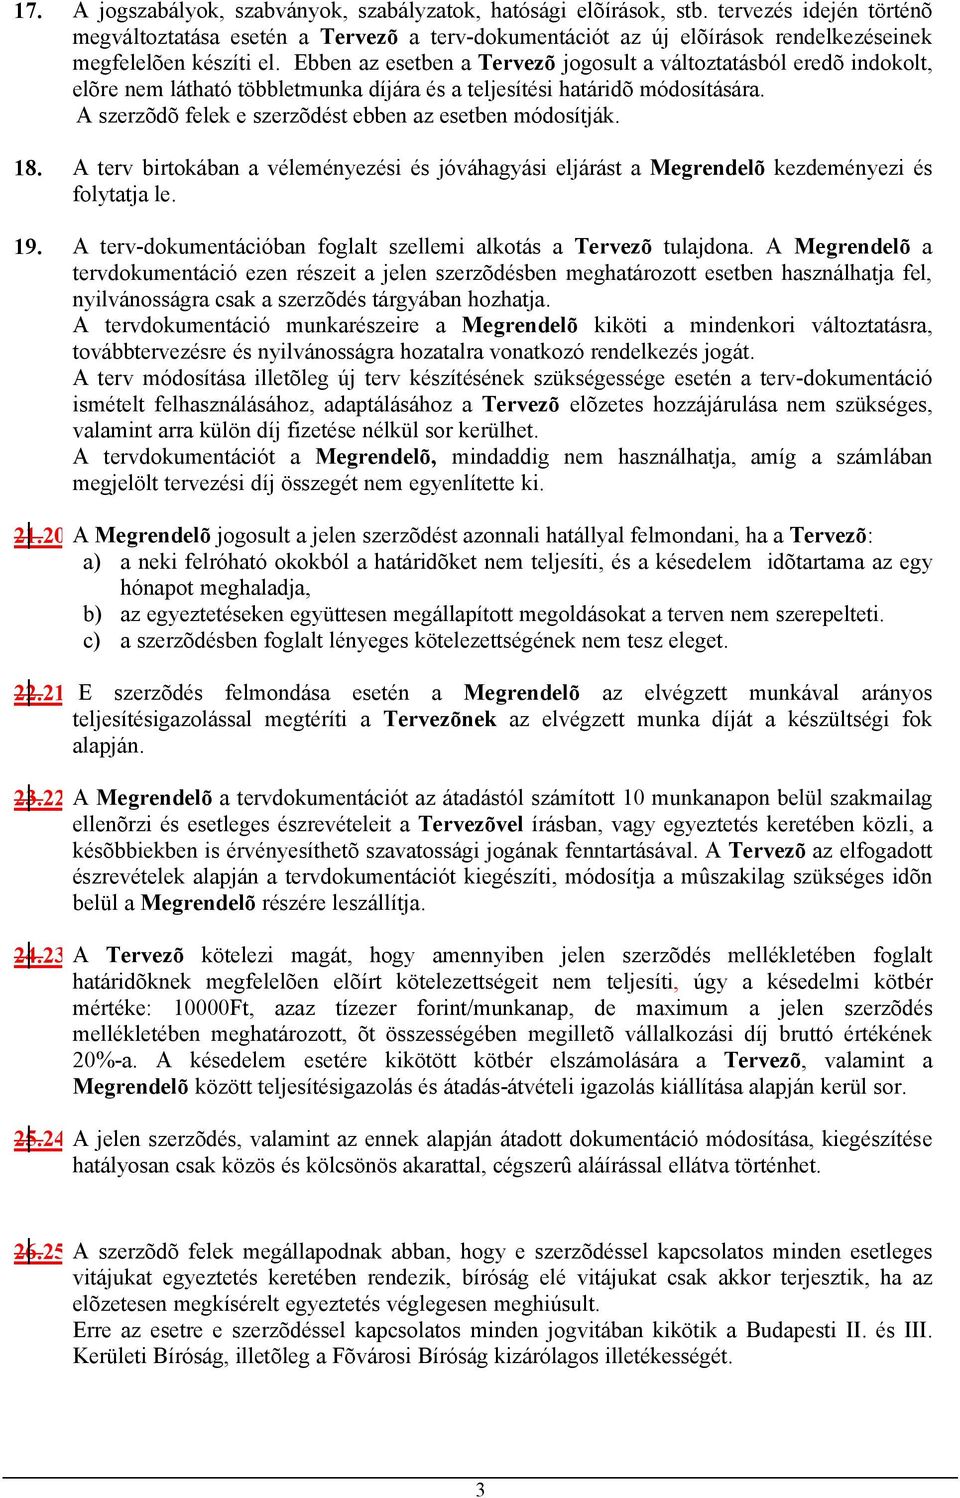 Ebben az esetben a Tervezõ jogosult a változtatásból eredõ indokolt, elõre nem látható többletmunka díjára és a teljesítési határidõ módosítására.